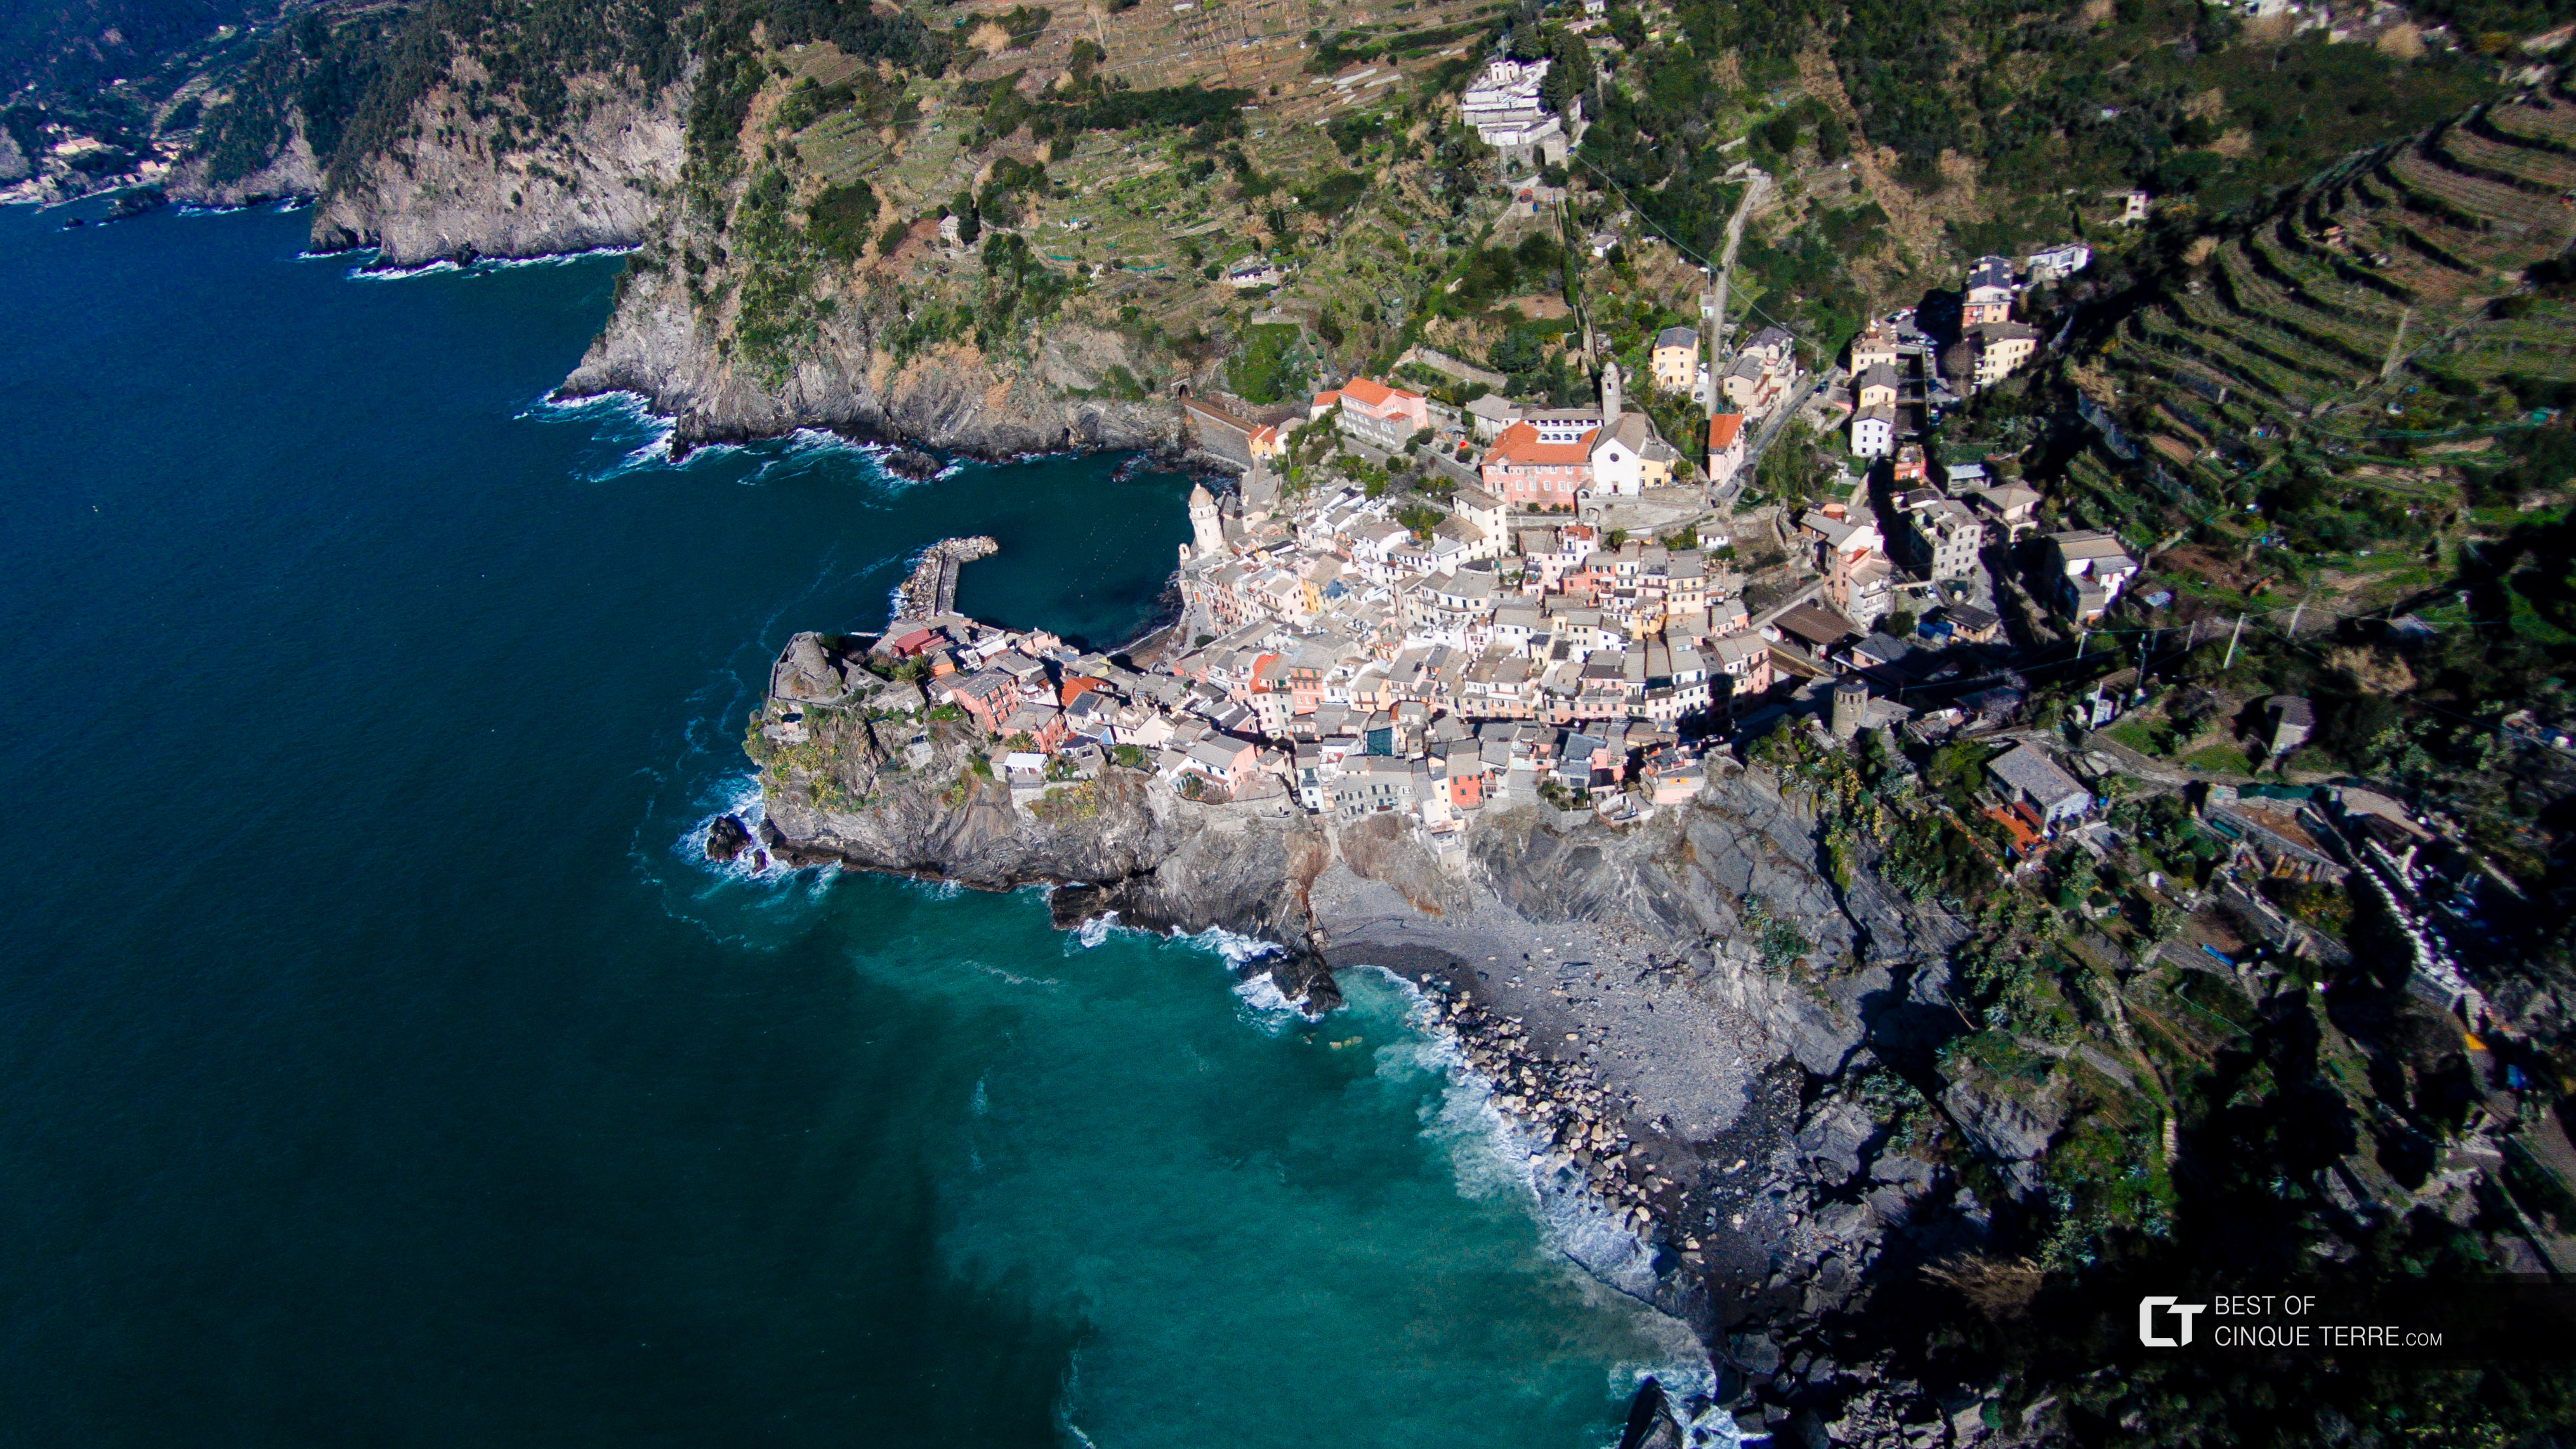 Vue du village depuis le ciel (drone), Vernazza, Cinque Terre, Italie